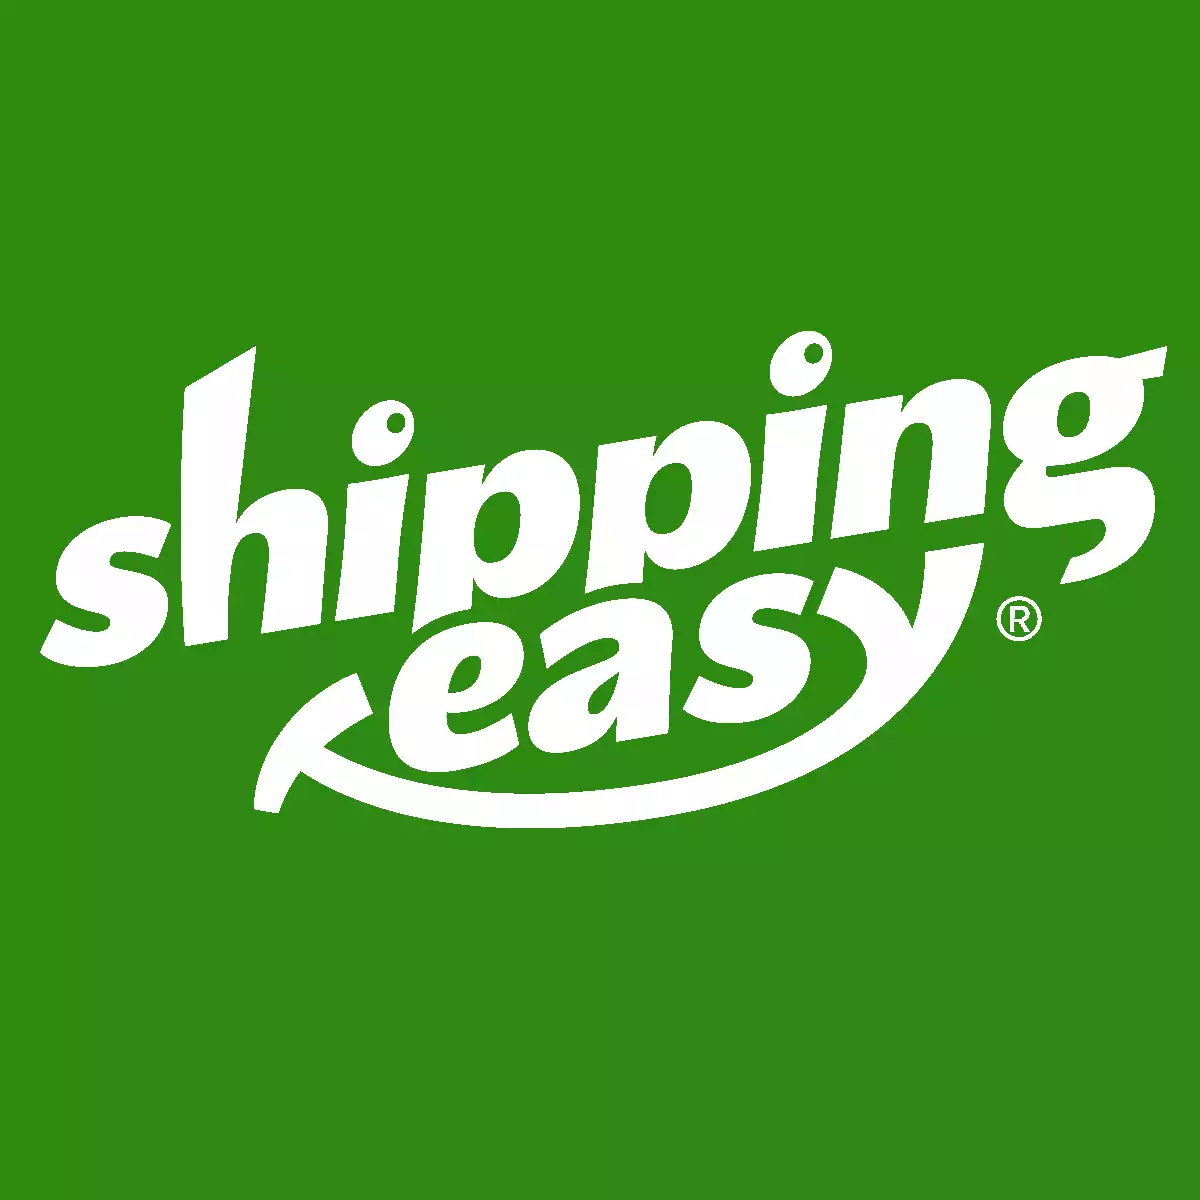 Por qué prefiero ShippingEasy